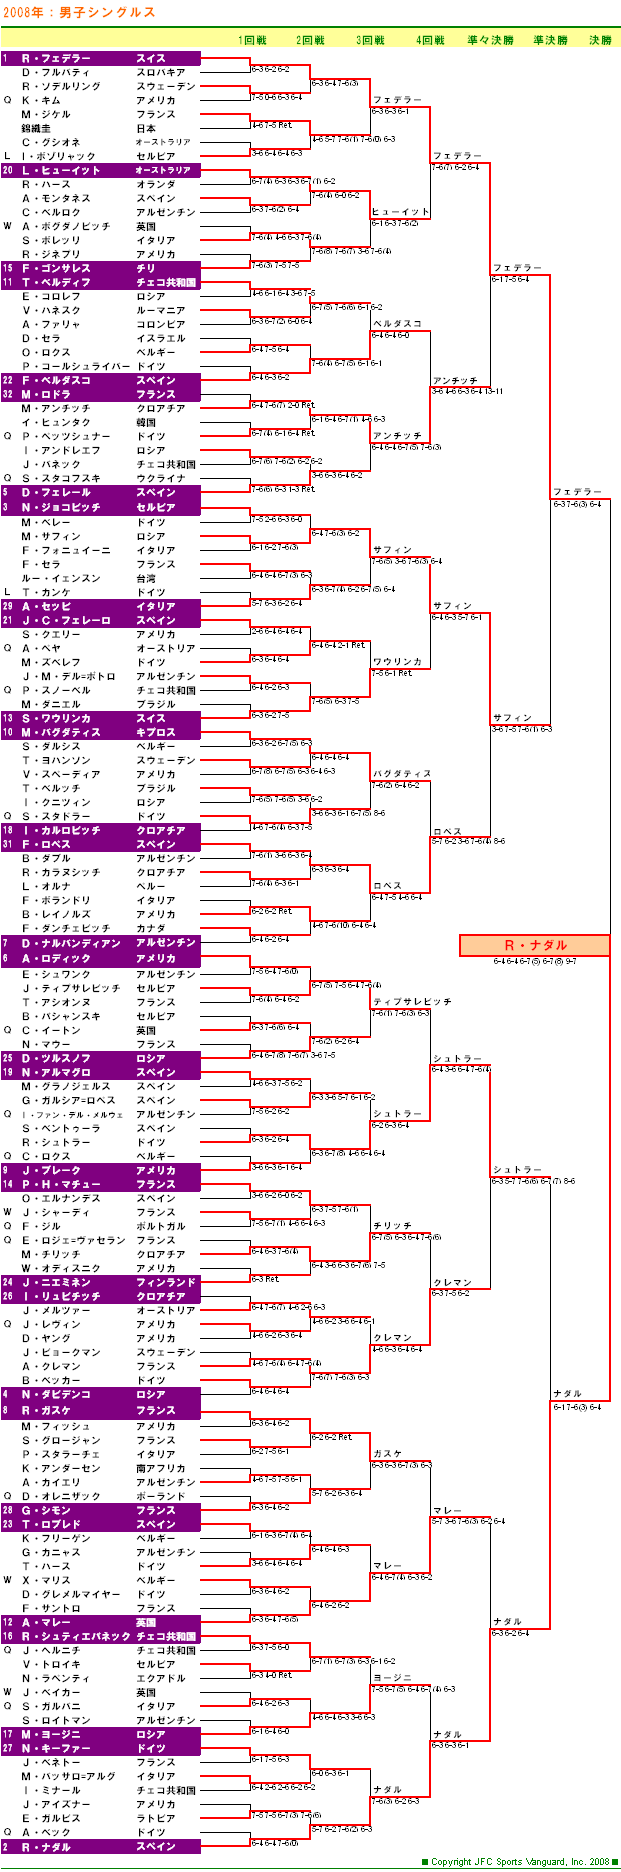 ウィンブルドンテニス2008　男子シングルスドロー表